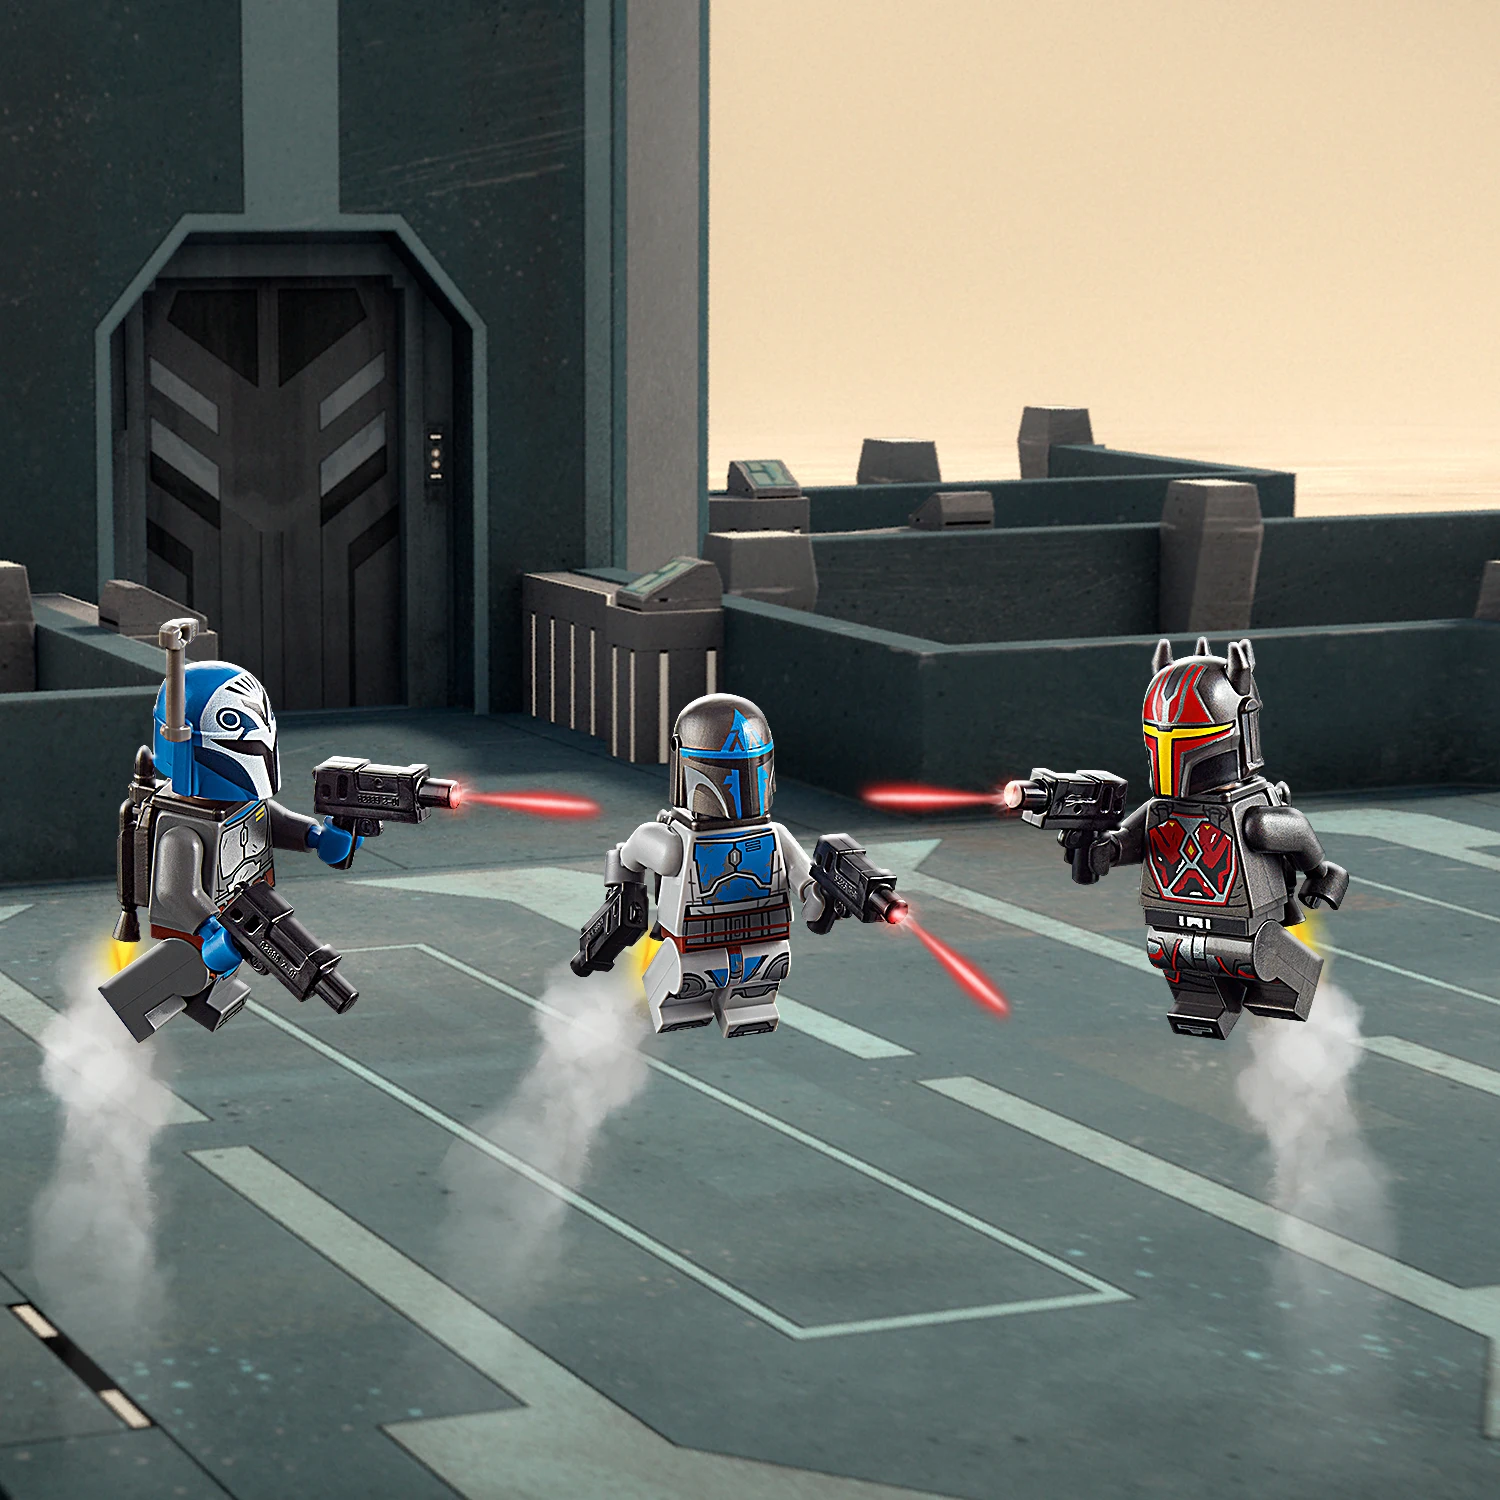 Конструктор LEGO Star Wars 75316 Звездный истребитель мандалорцев | Игрушки и хобби